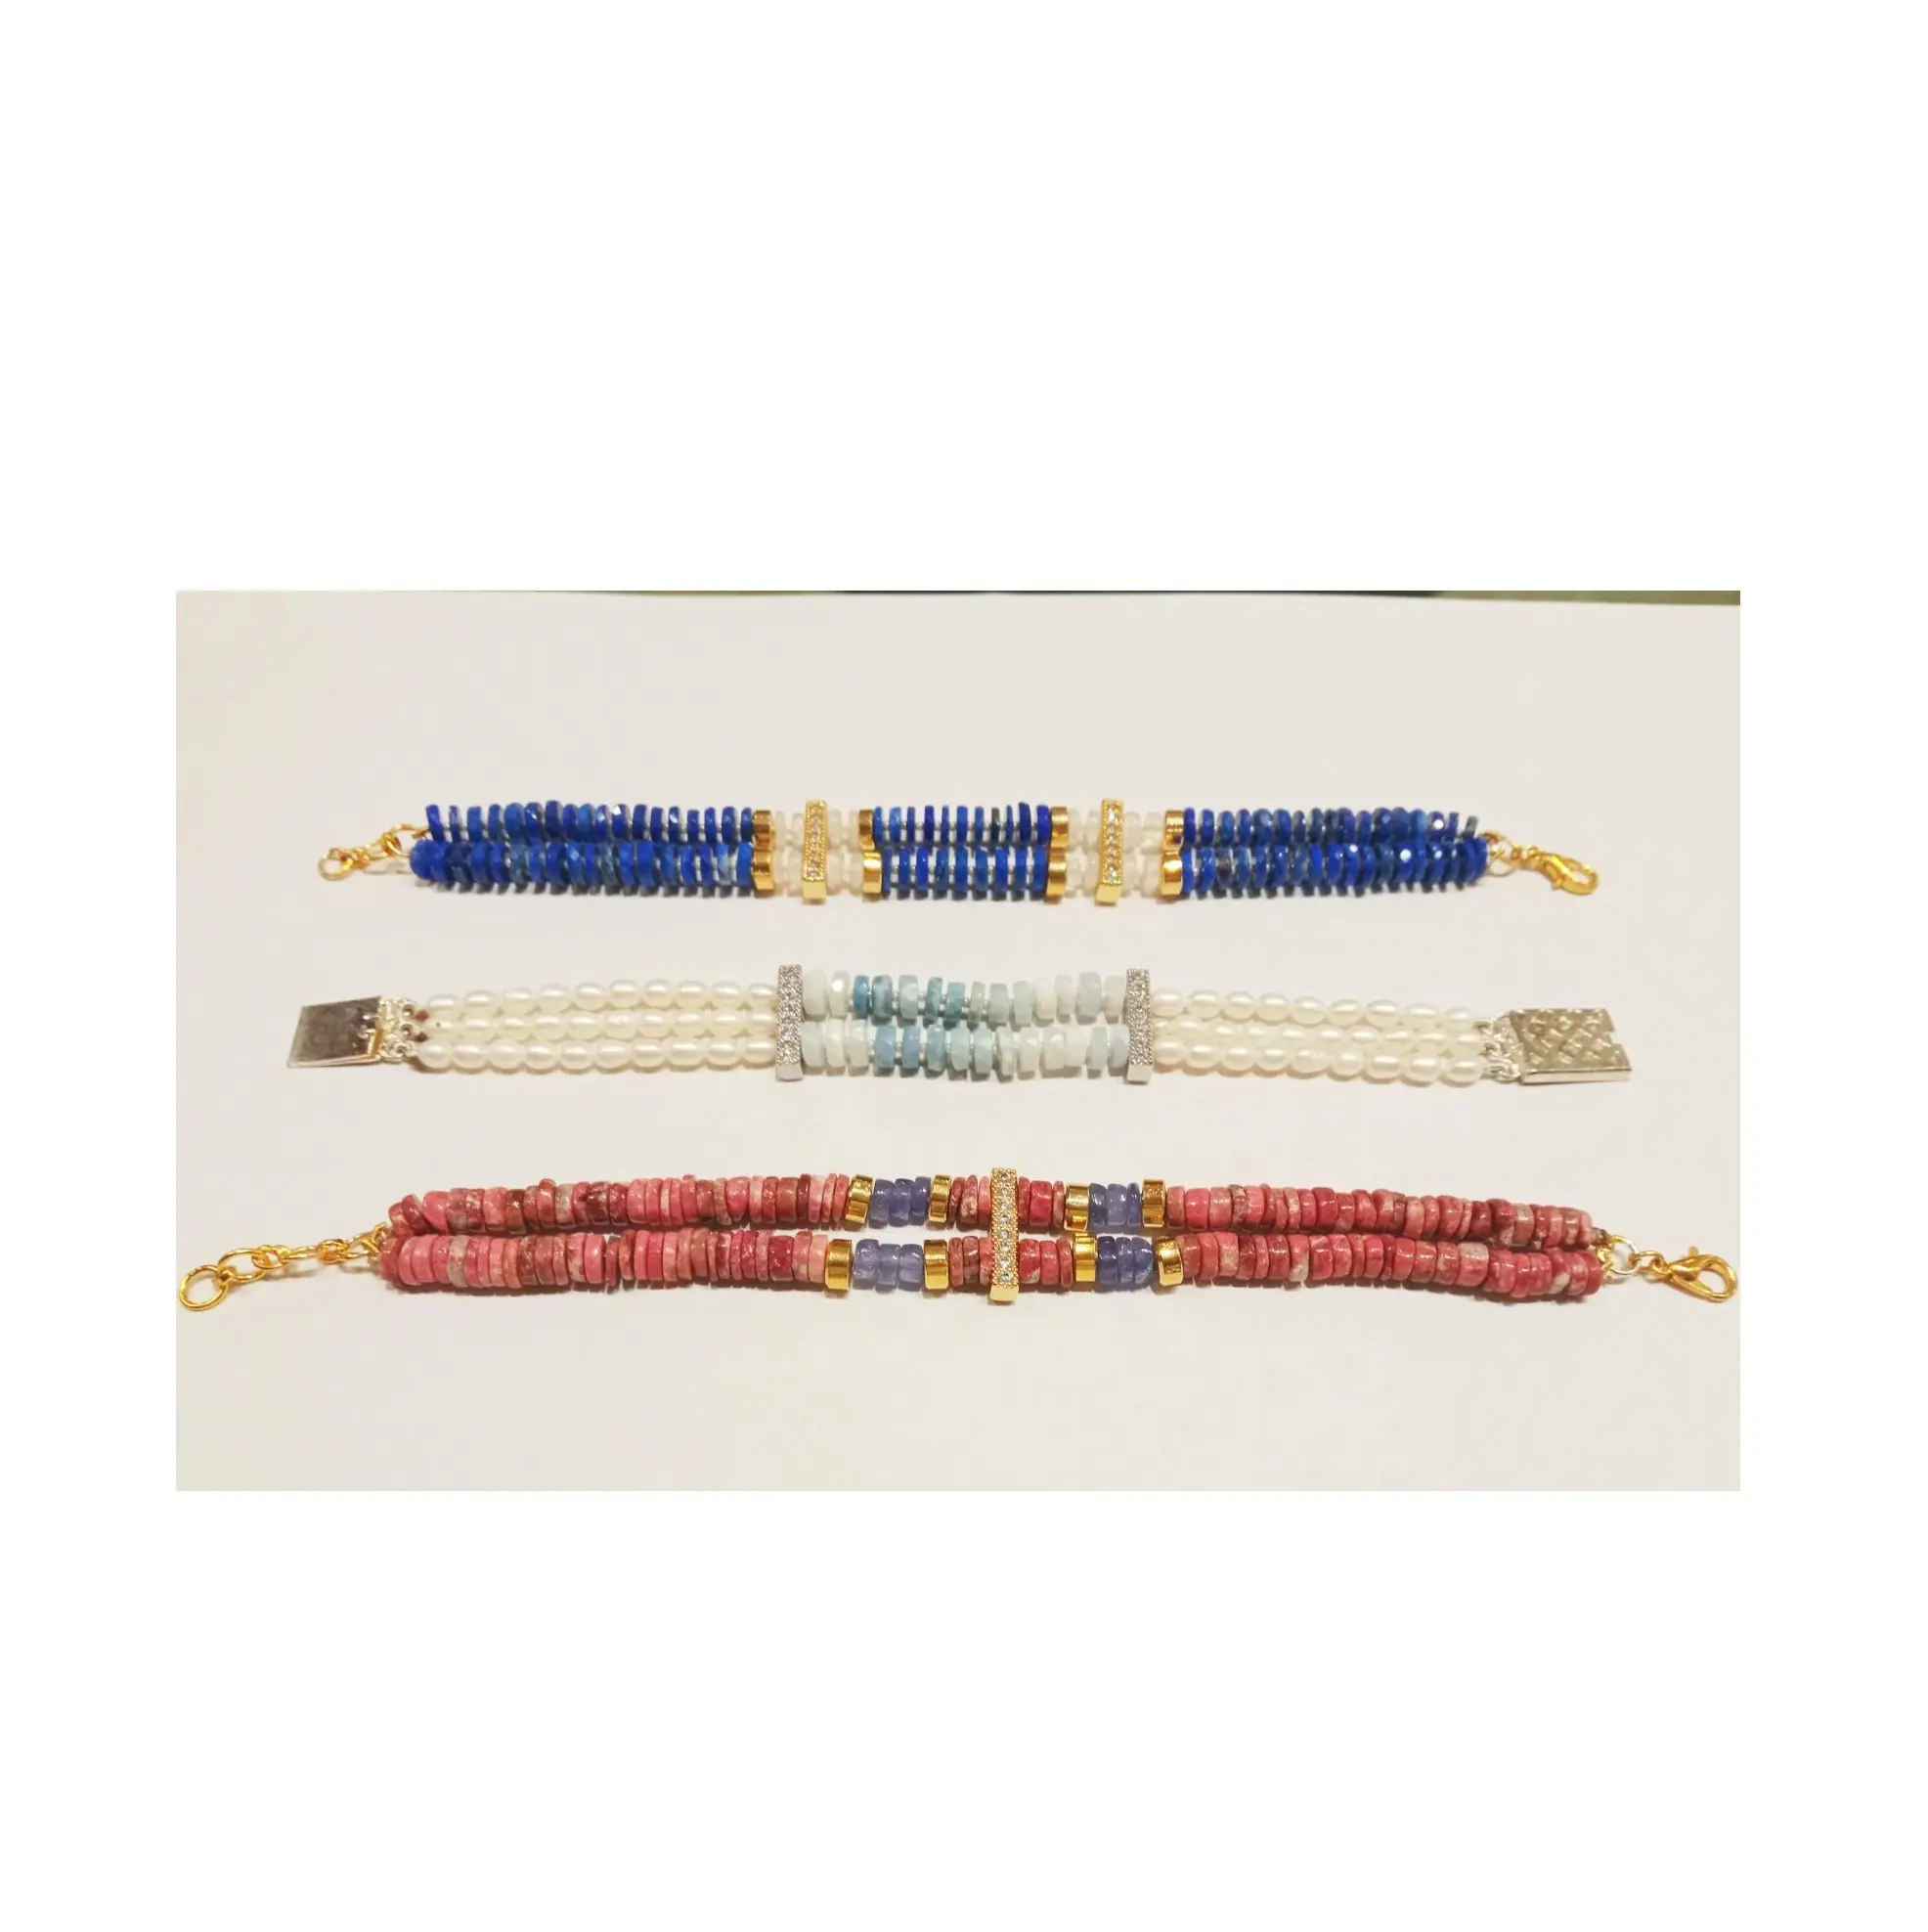 Elegante natürliche Lapis faceted Heishi-Perlen-Armbänder für Damengebrauch zu Großhandelspreisen aus Indien verfügbar